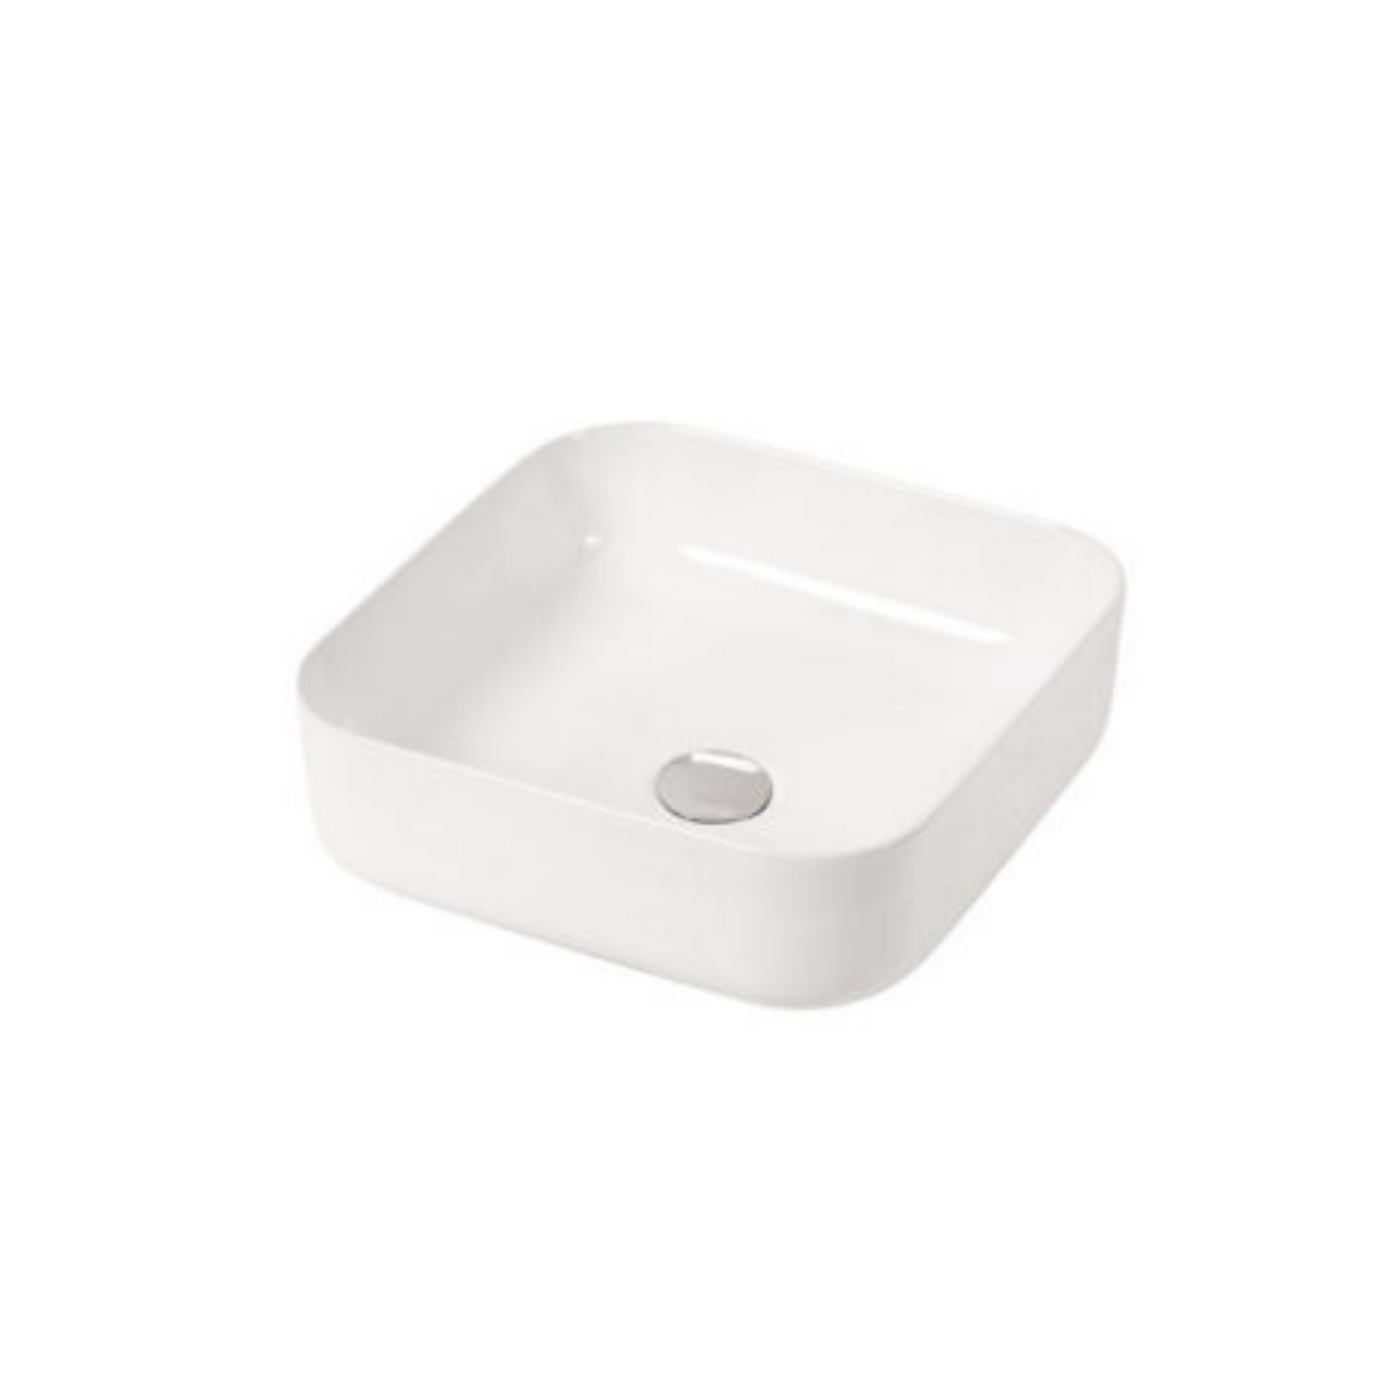 Ceramic Bathroom Sink in White